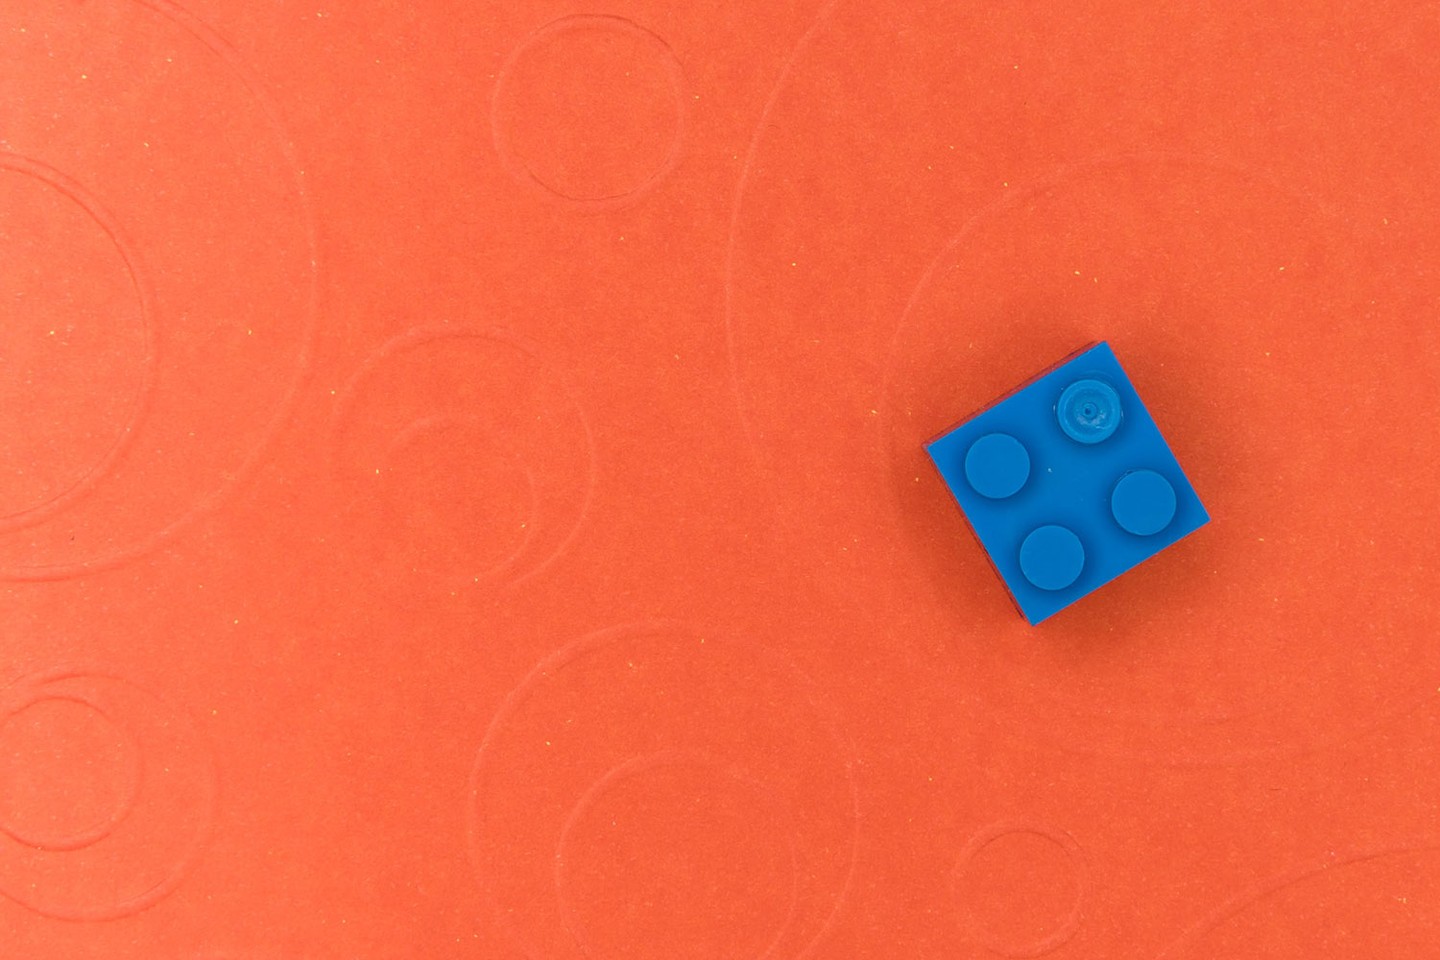 Single blue lego on orange background